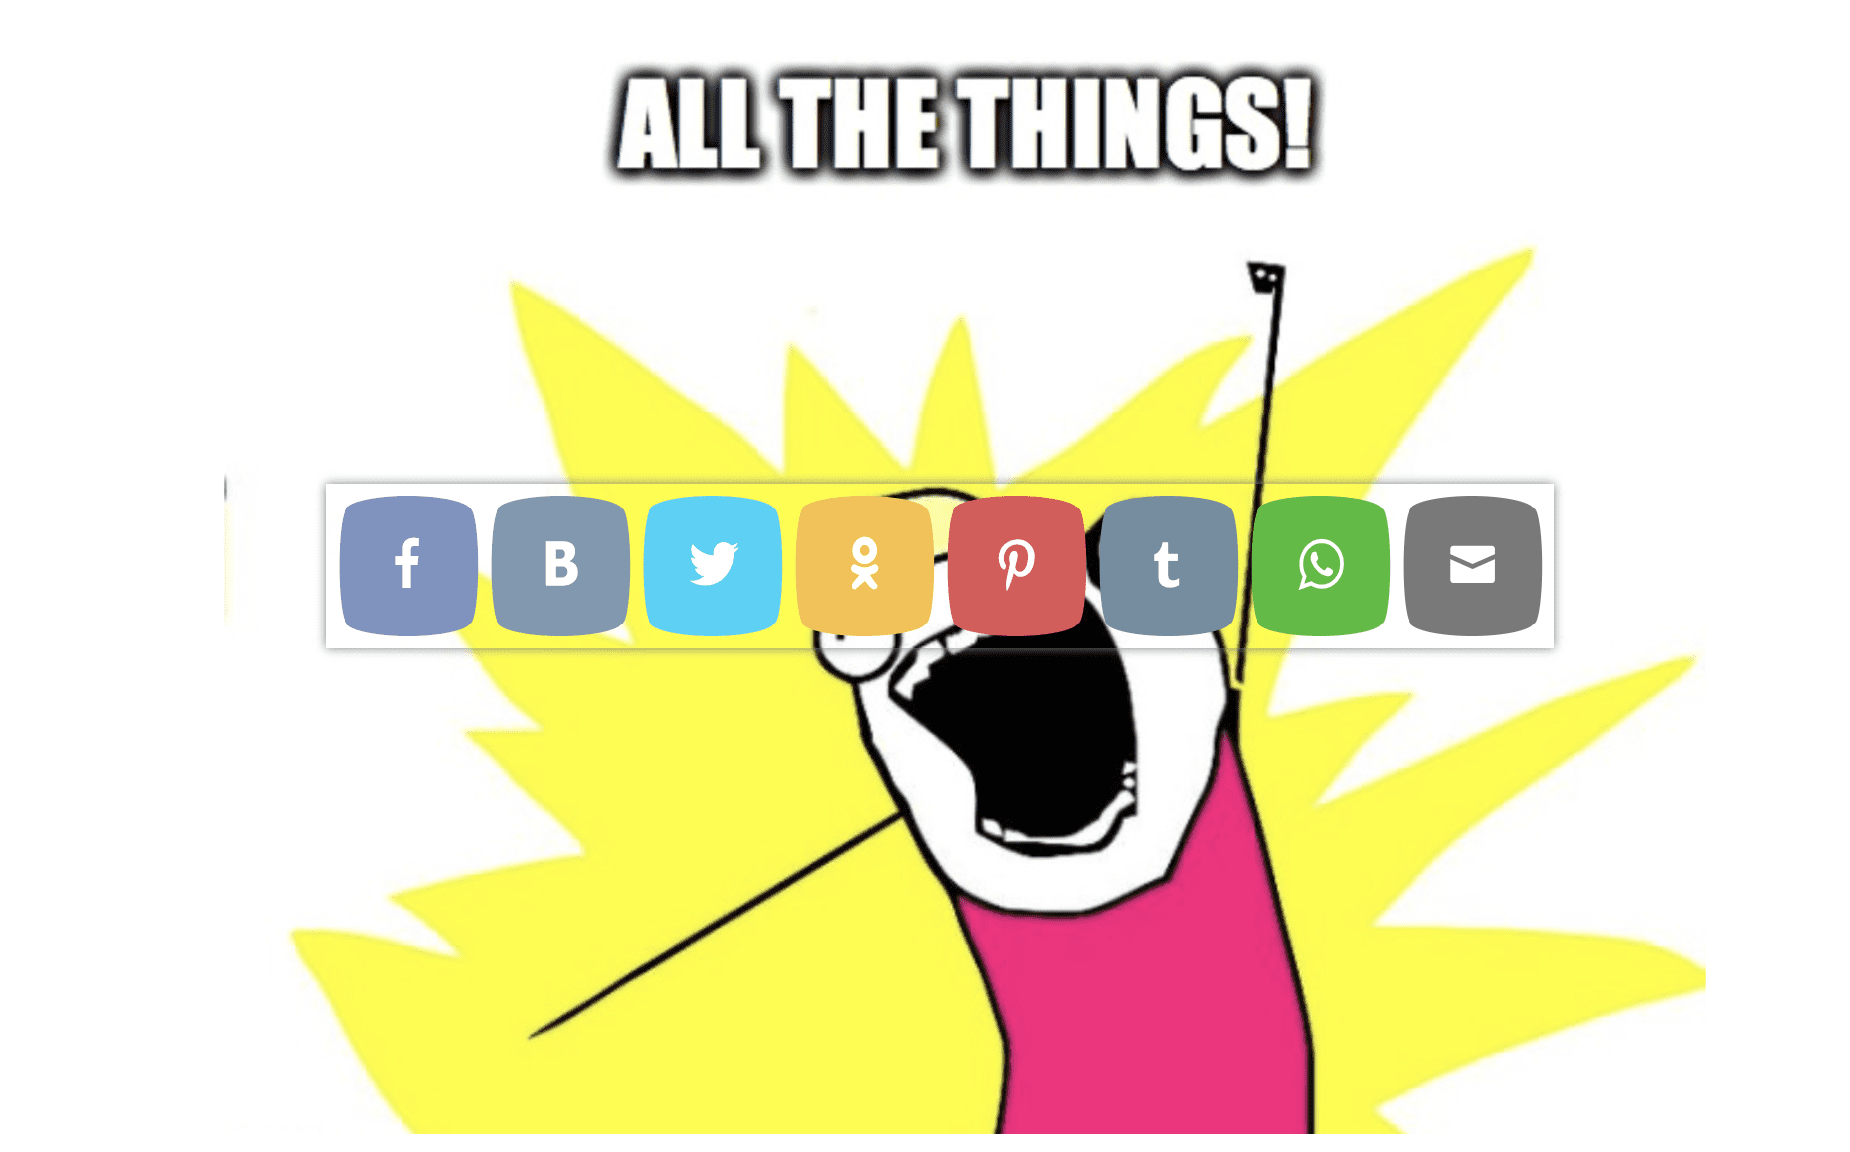 social media buttons